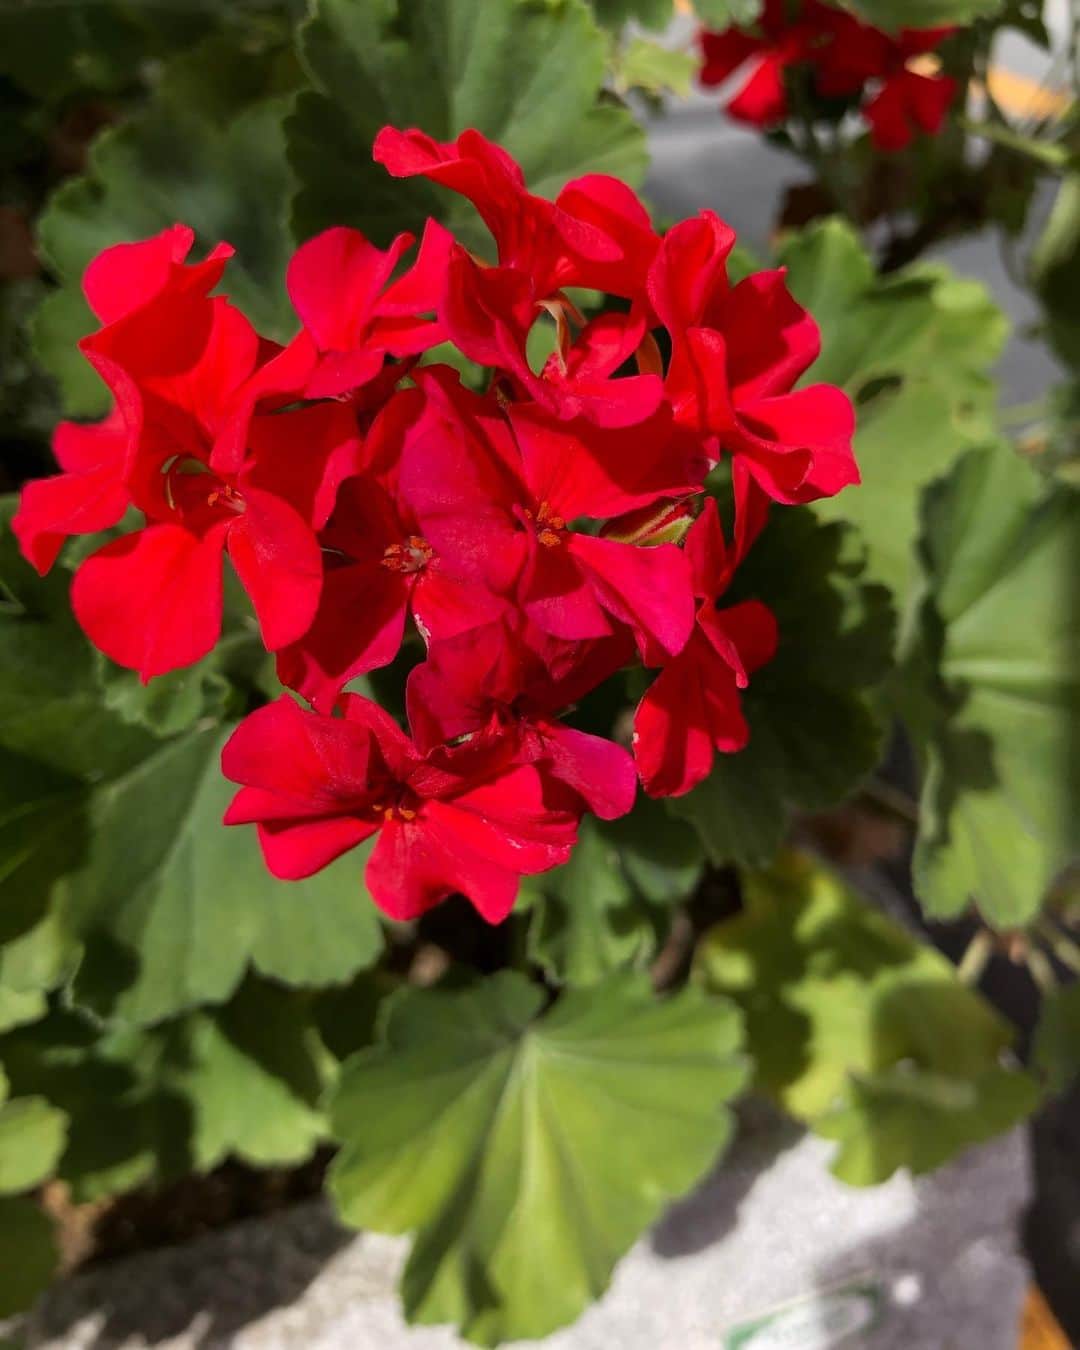 竹川美子さんのインスタグラム写真 竹川美子instagram 赤いゼラニウムの花 赤い